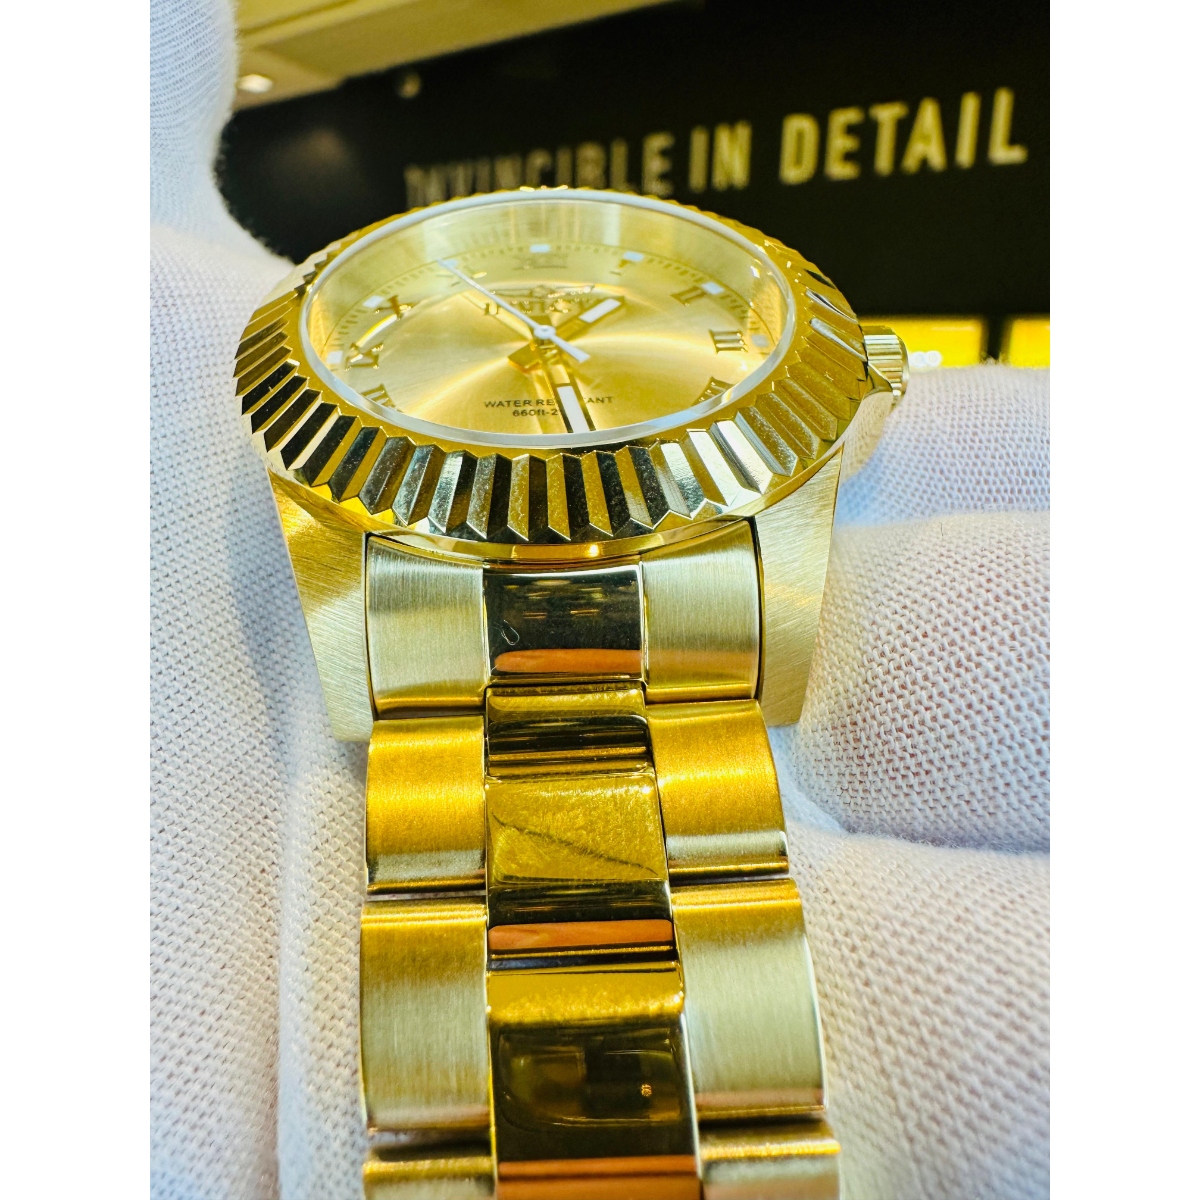 Reloj para Caballero Invicta 16739 dorado con pantalla analogica